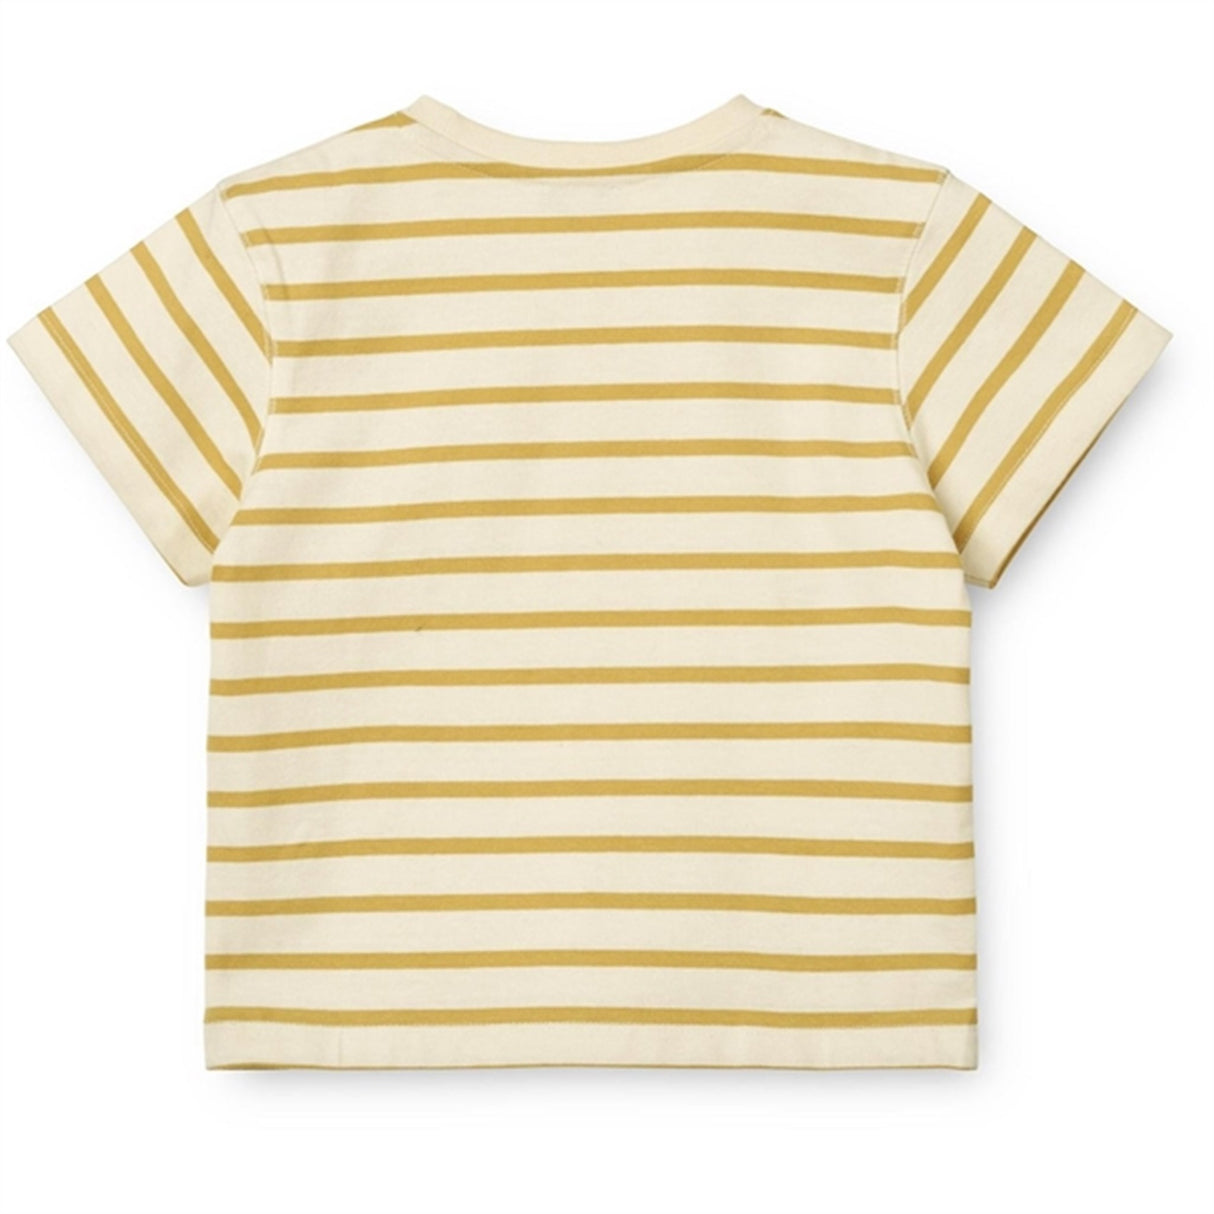 Liewood Y/D Stripe Creme De La Creme/Crispy Corn Sixten Stripe T-shirt 2